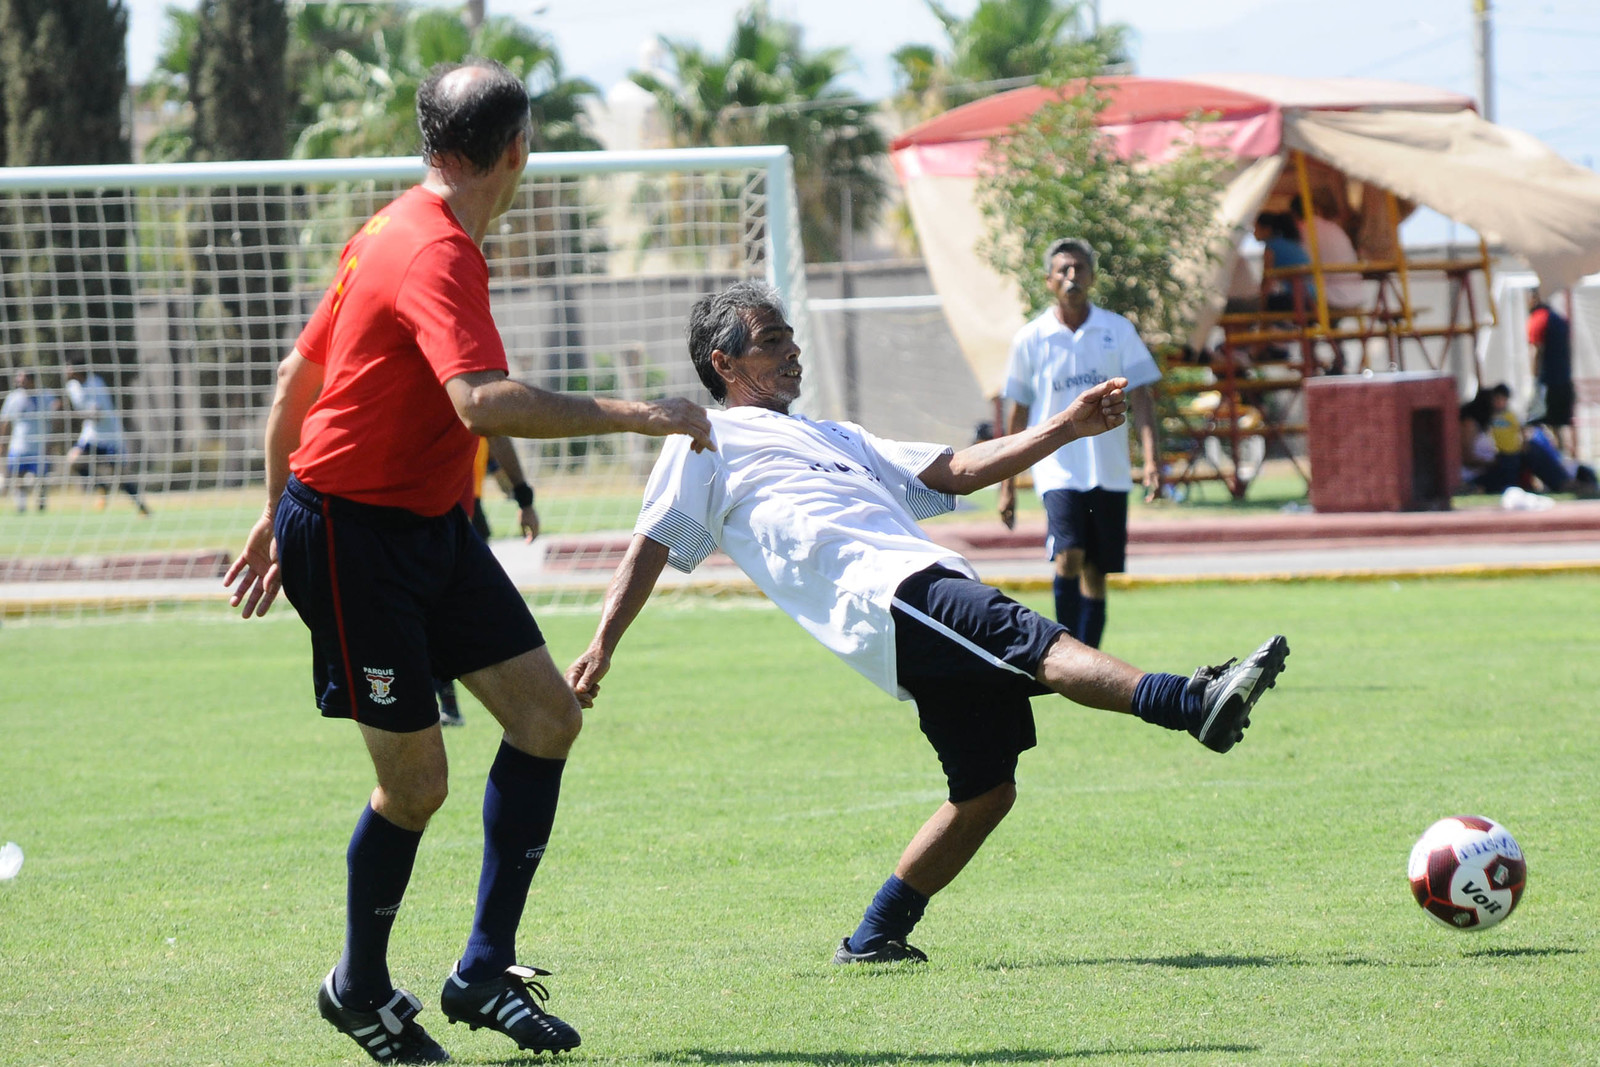 Alrededor de 12 equipos de la Comarca Lagunera, son los que se pretende reunir en la primera edición de la competencia amateur.